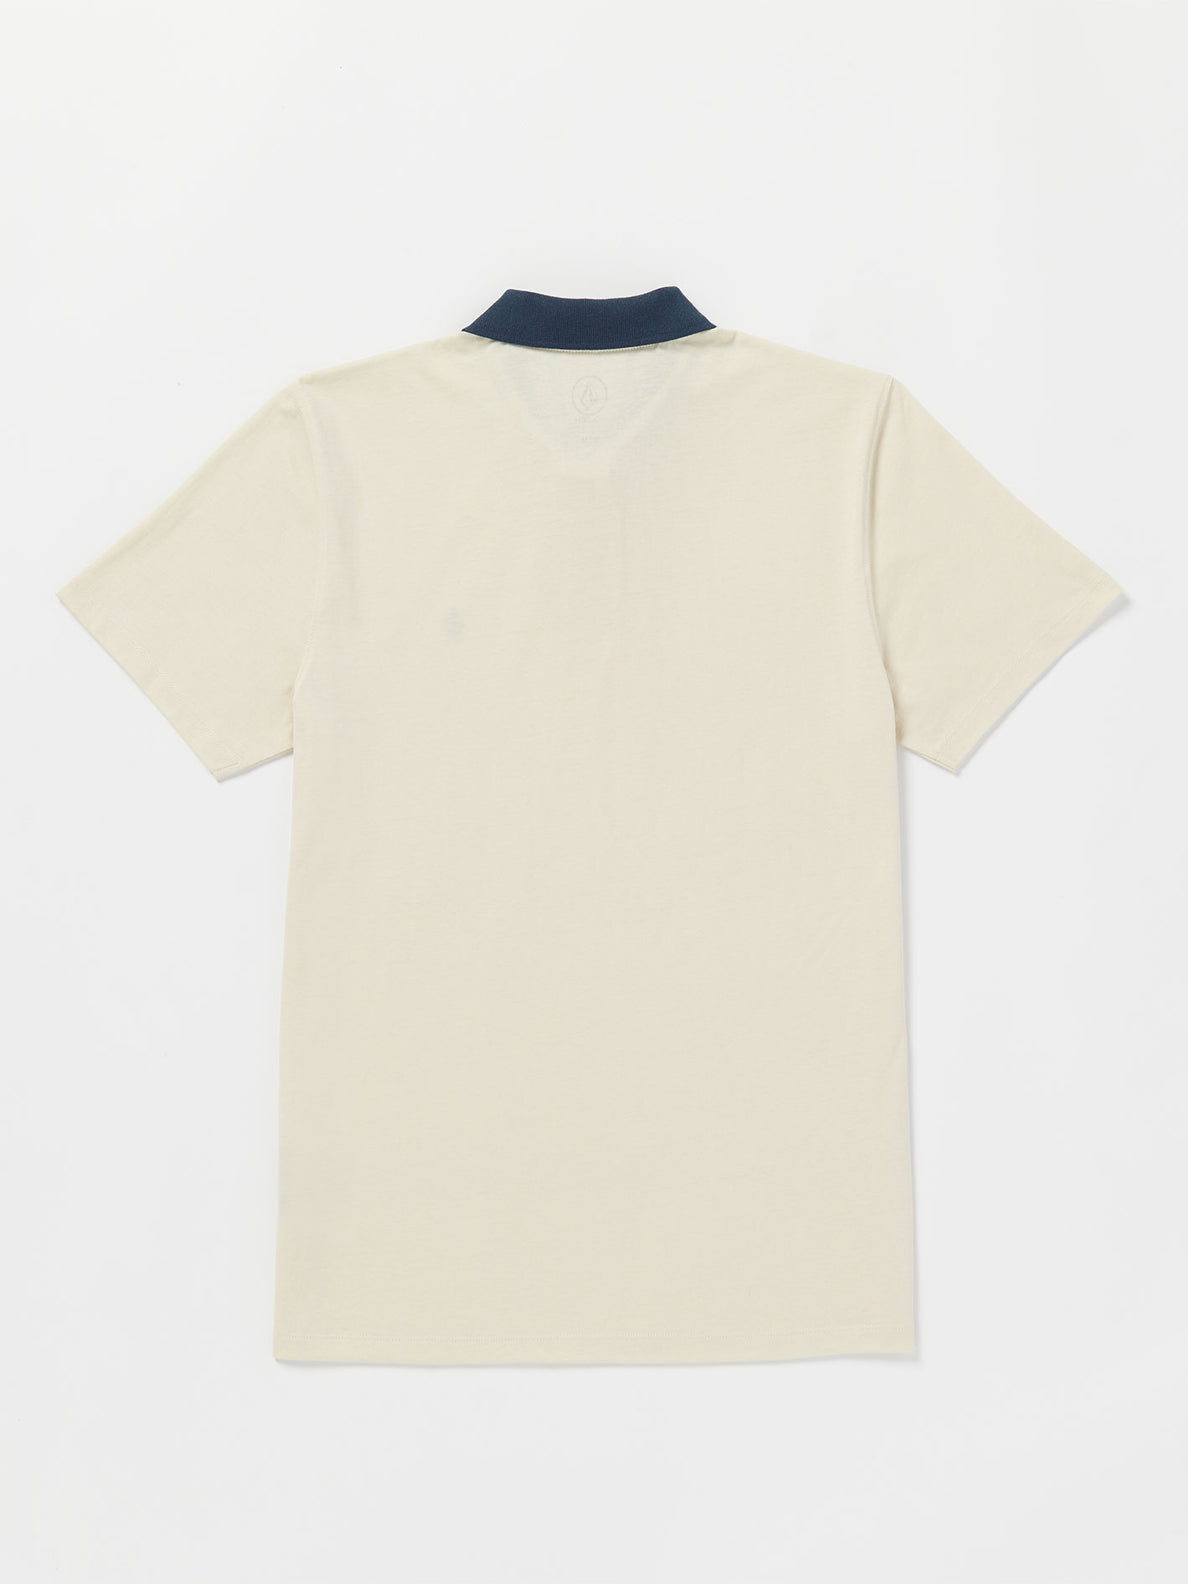 Middler Polo Short Sleeve Shirt - White Flash